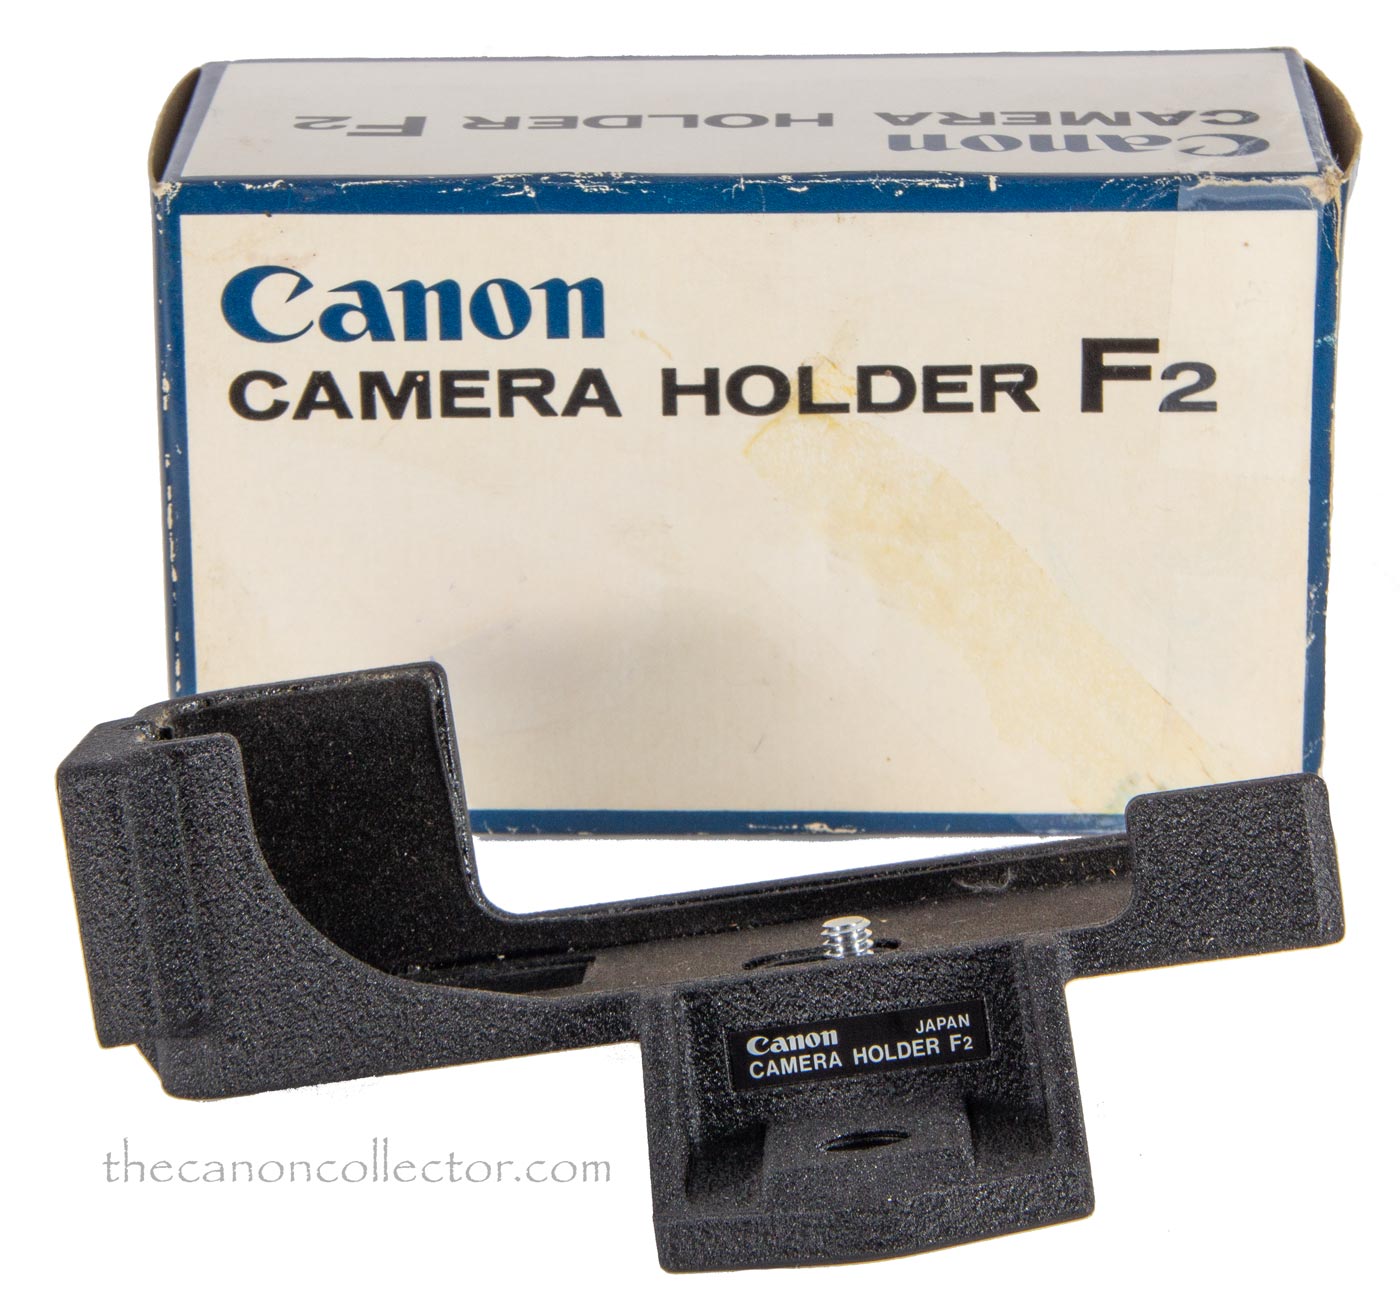 Canon Camera Holder F2